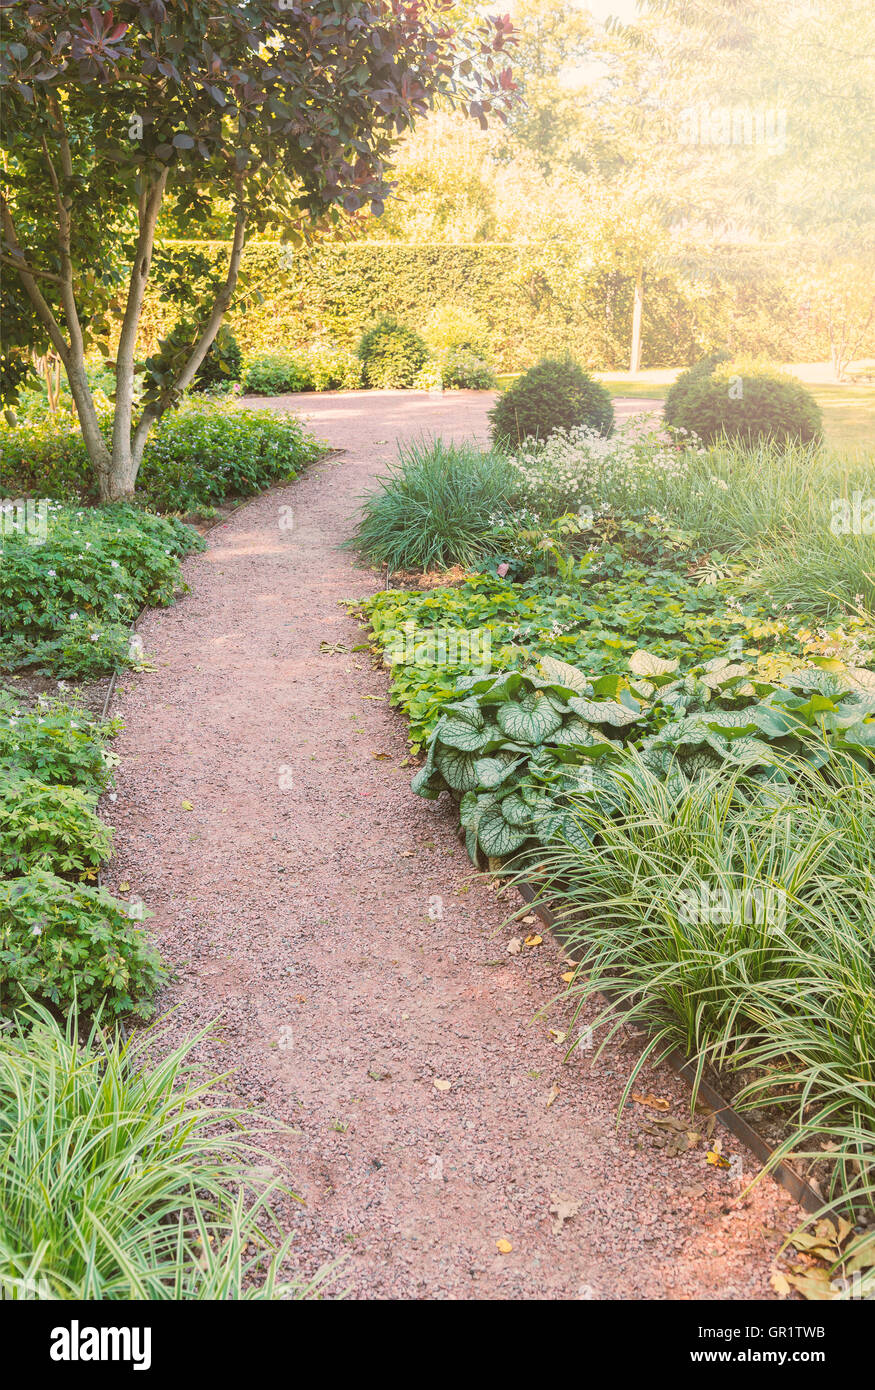 Immagine di un tranquillo giardino percorso a piedi. Foto Stock